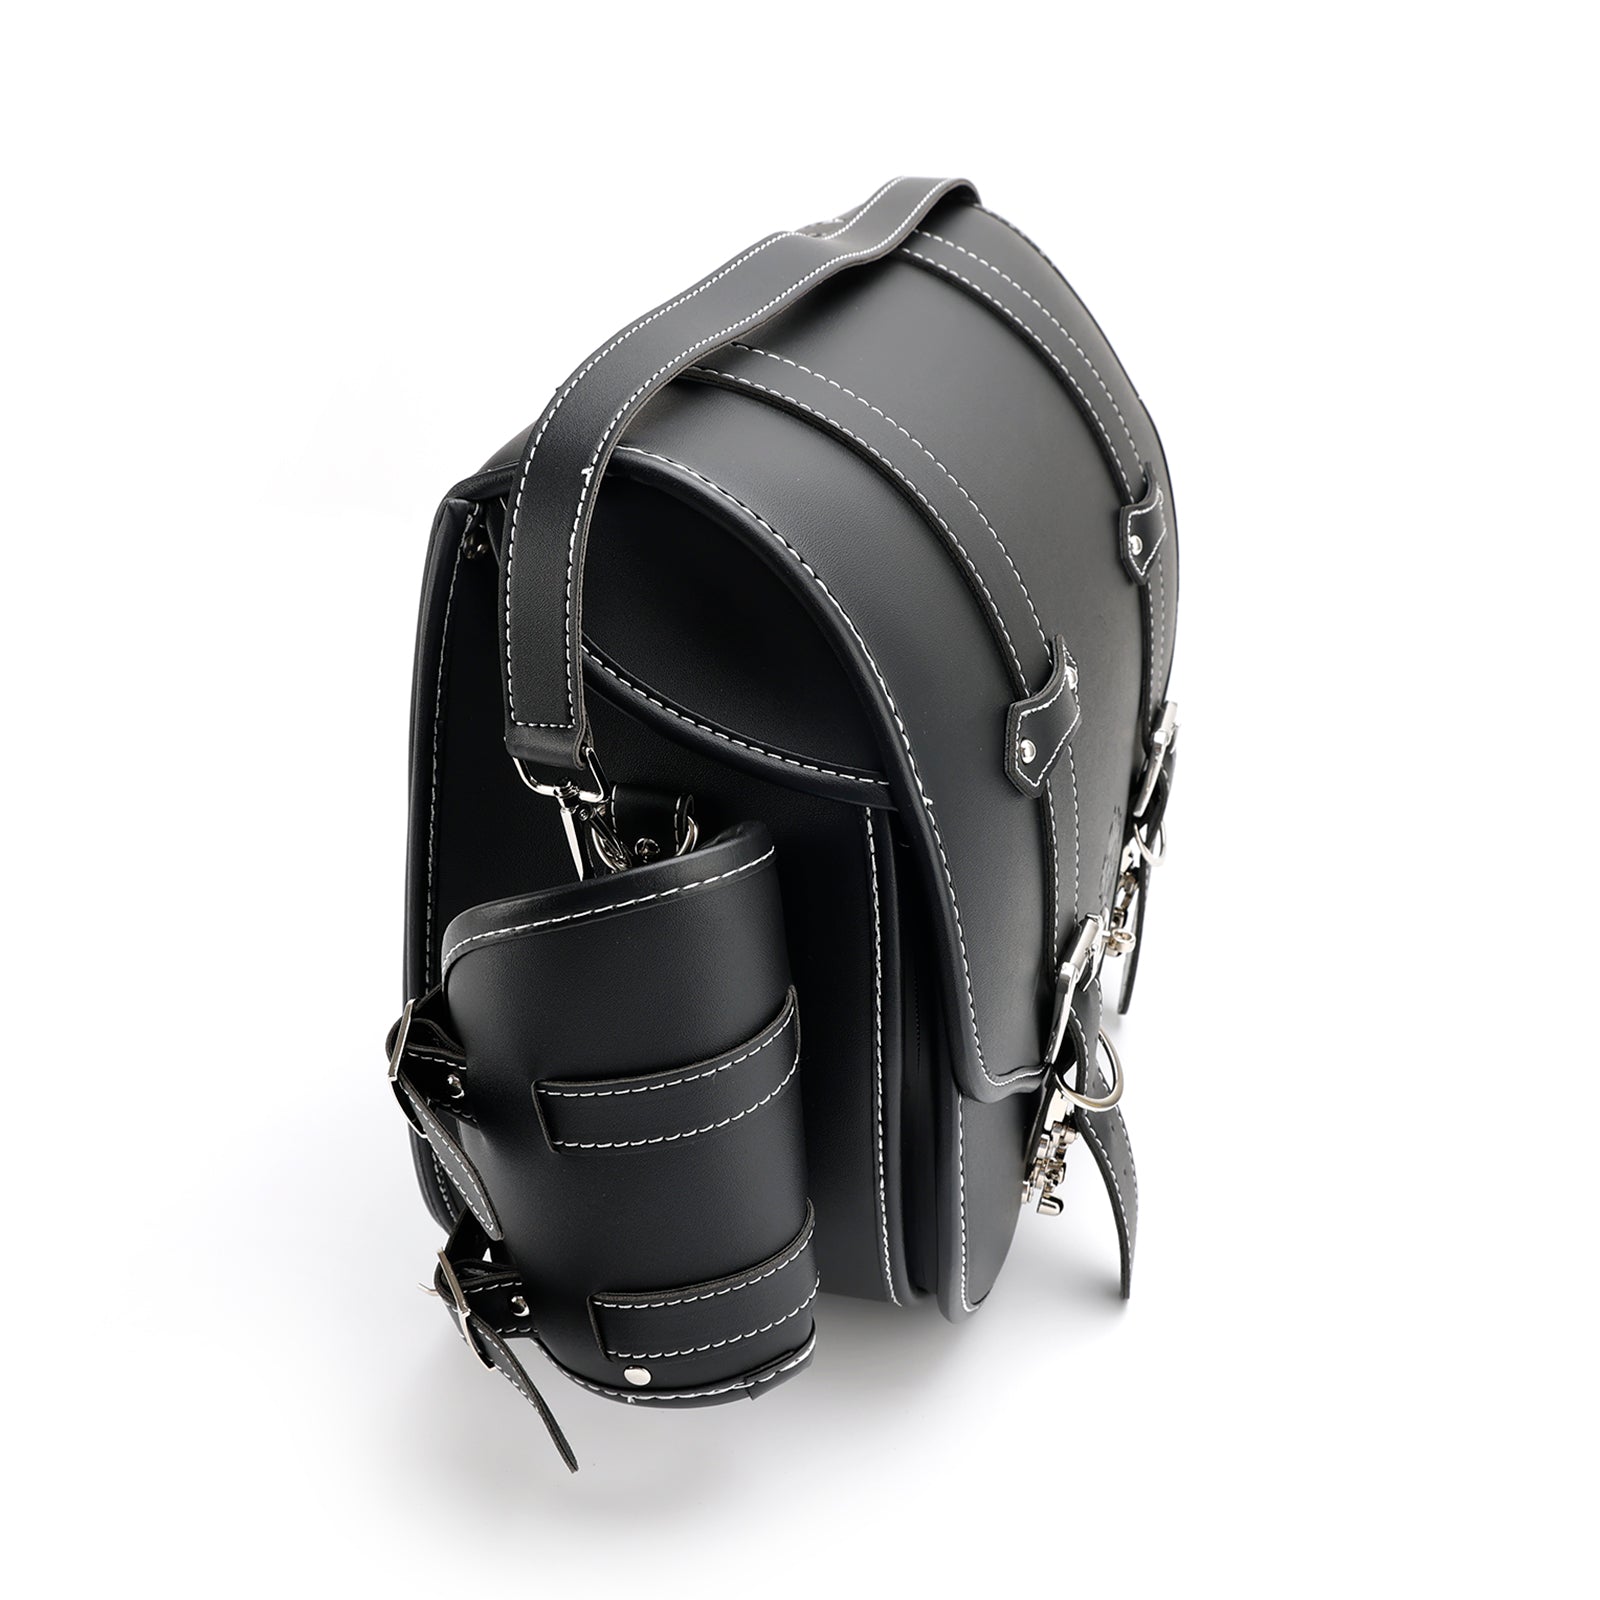 Quick Release Side Satteltasche Werkzeug Gepäck Tasche Lagerung verdicken schwarz für Motor